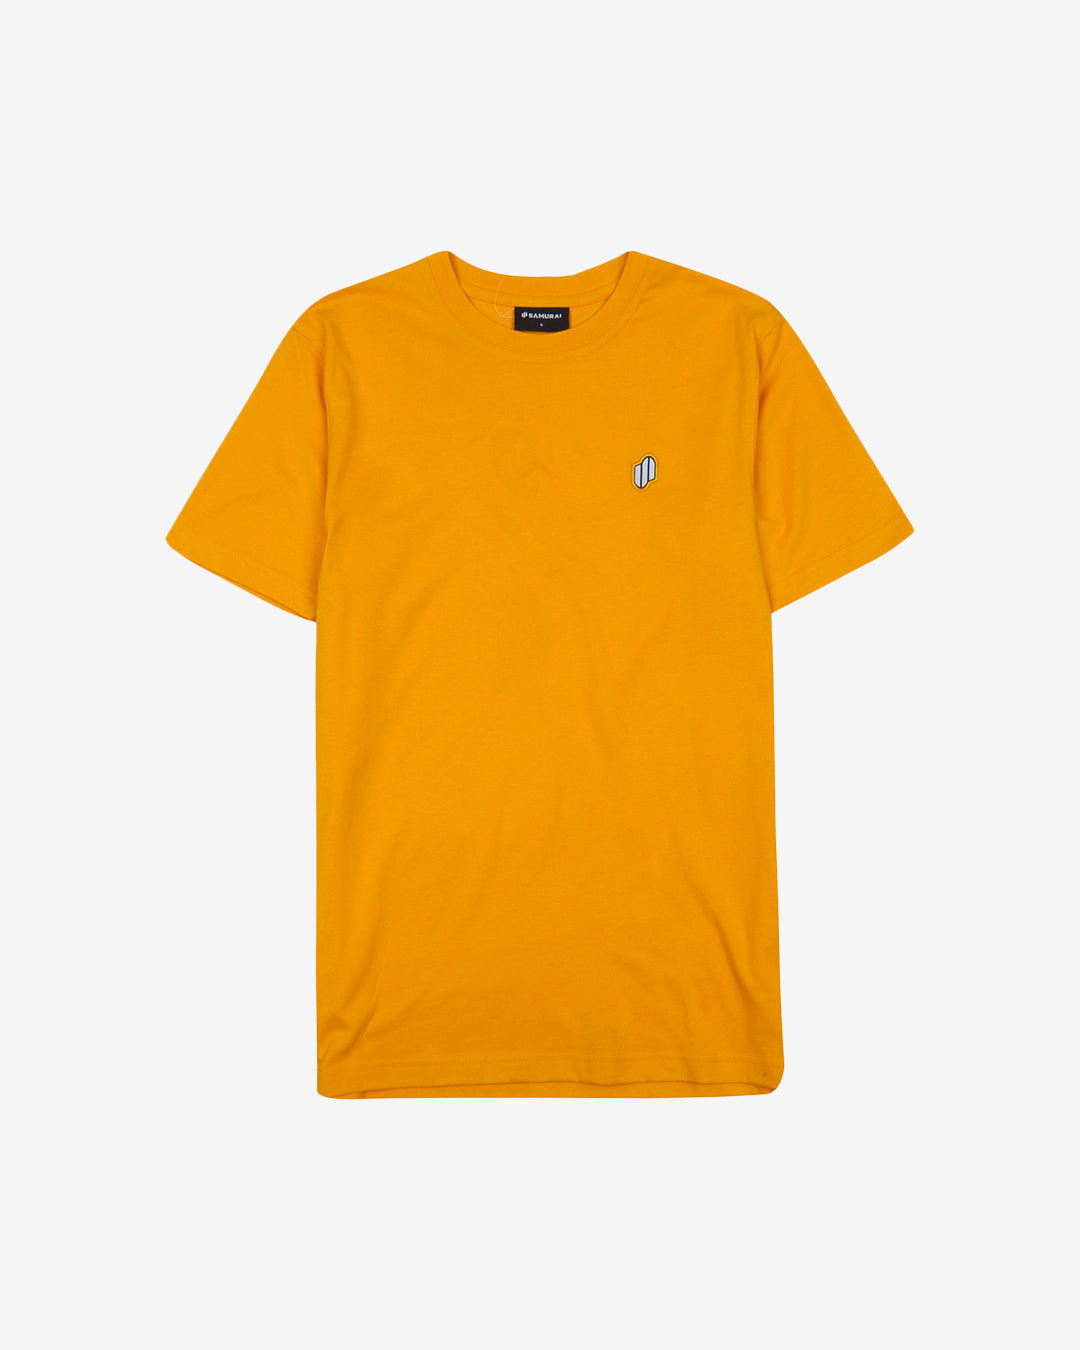 PFC: 002-1 - Womens T-Shirt - Amber Yellow